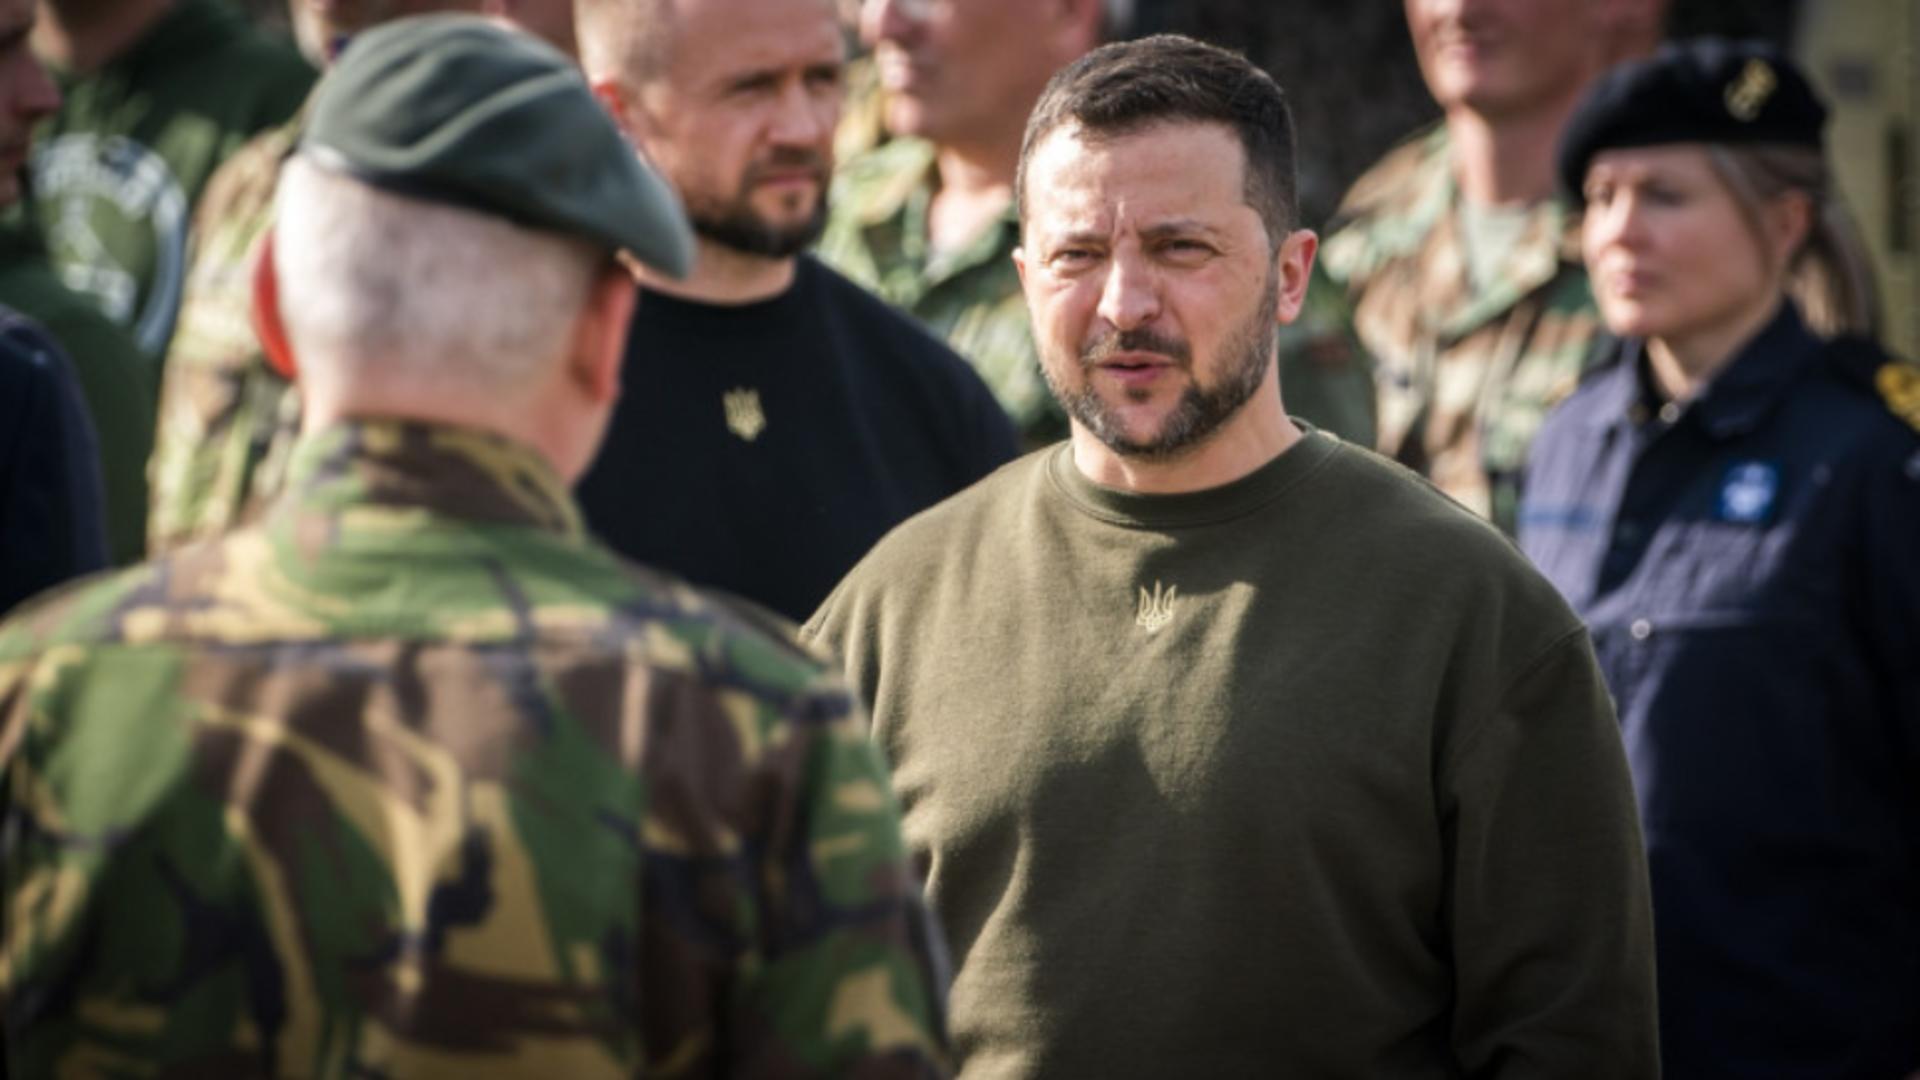 Politician influent, reținut de serviciul secret - Dezvăluiri despre corupția din armată, după demiterile lui Zelenski/Foto: Profi Media